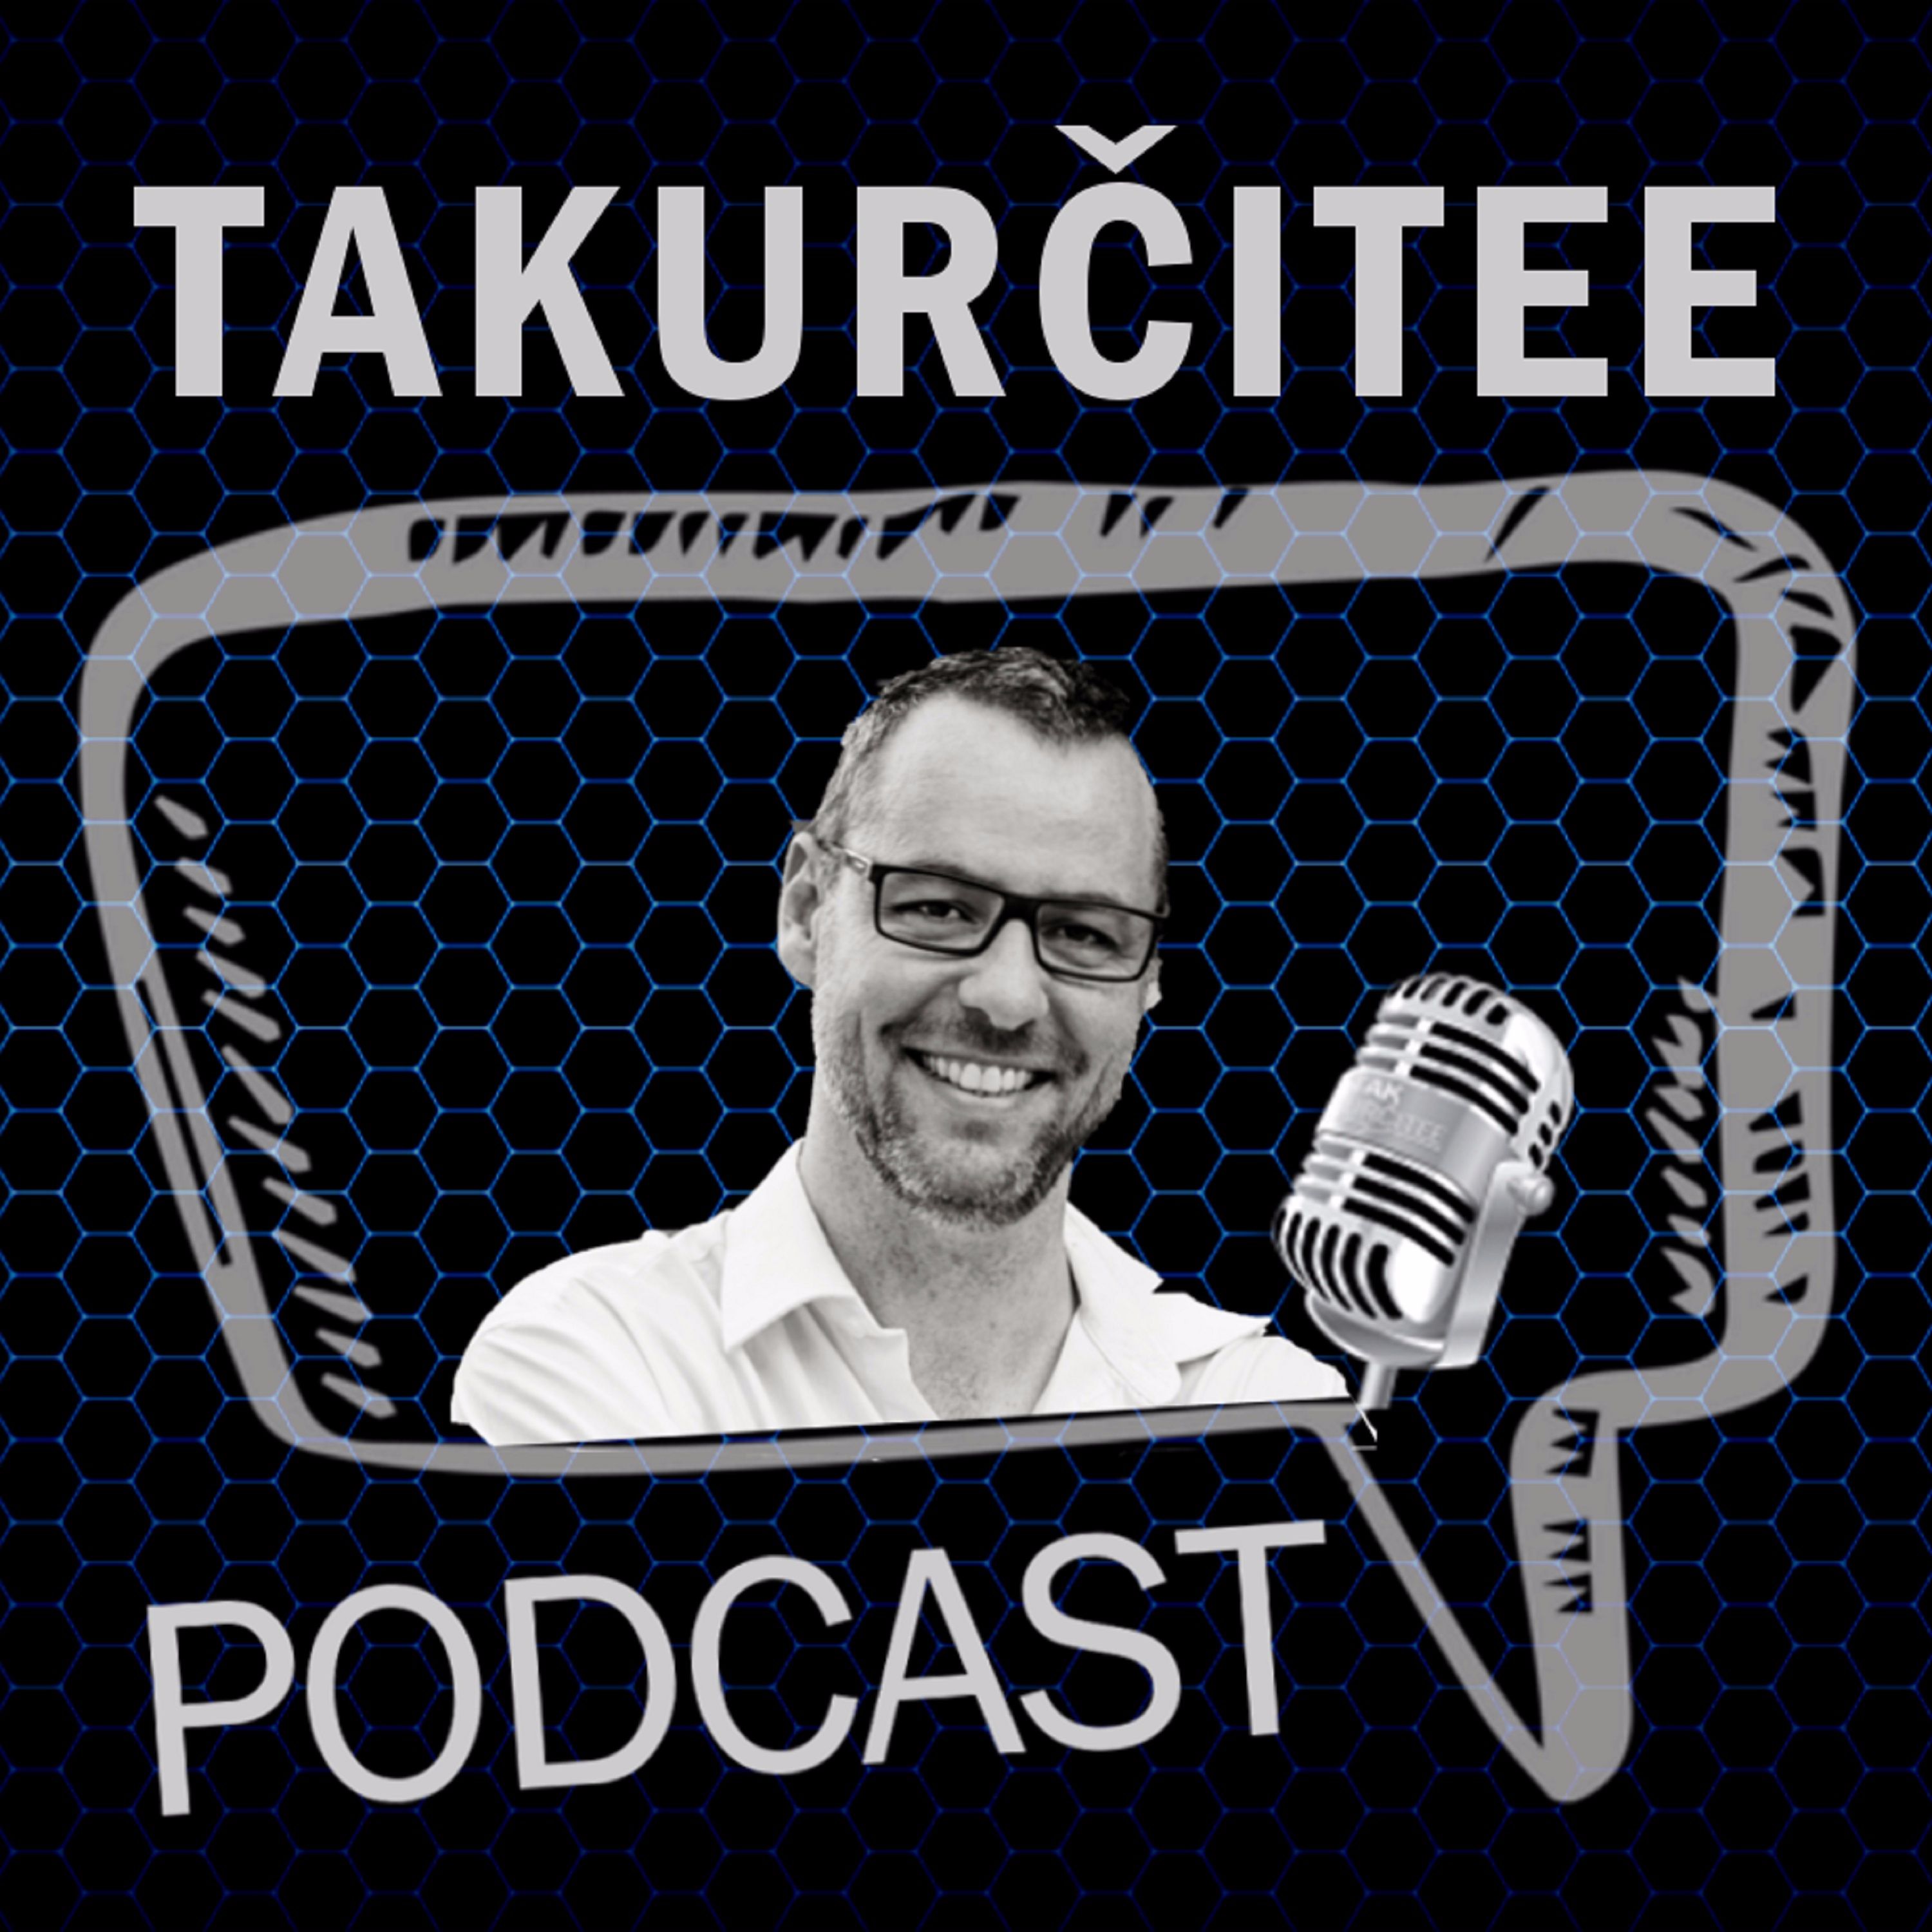 TakUrčitee Podcast, Ep. 39: Nová sezóna NBA a spomienka na Lukjanca